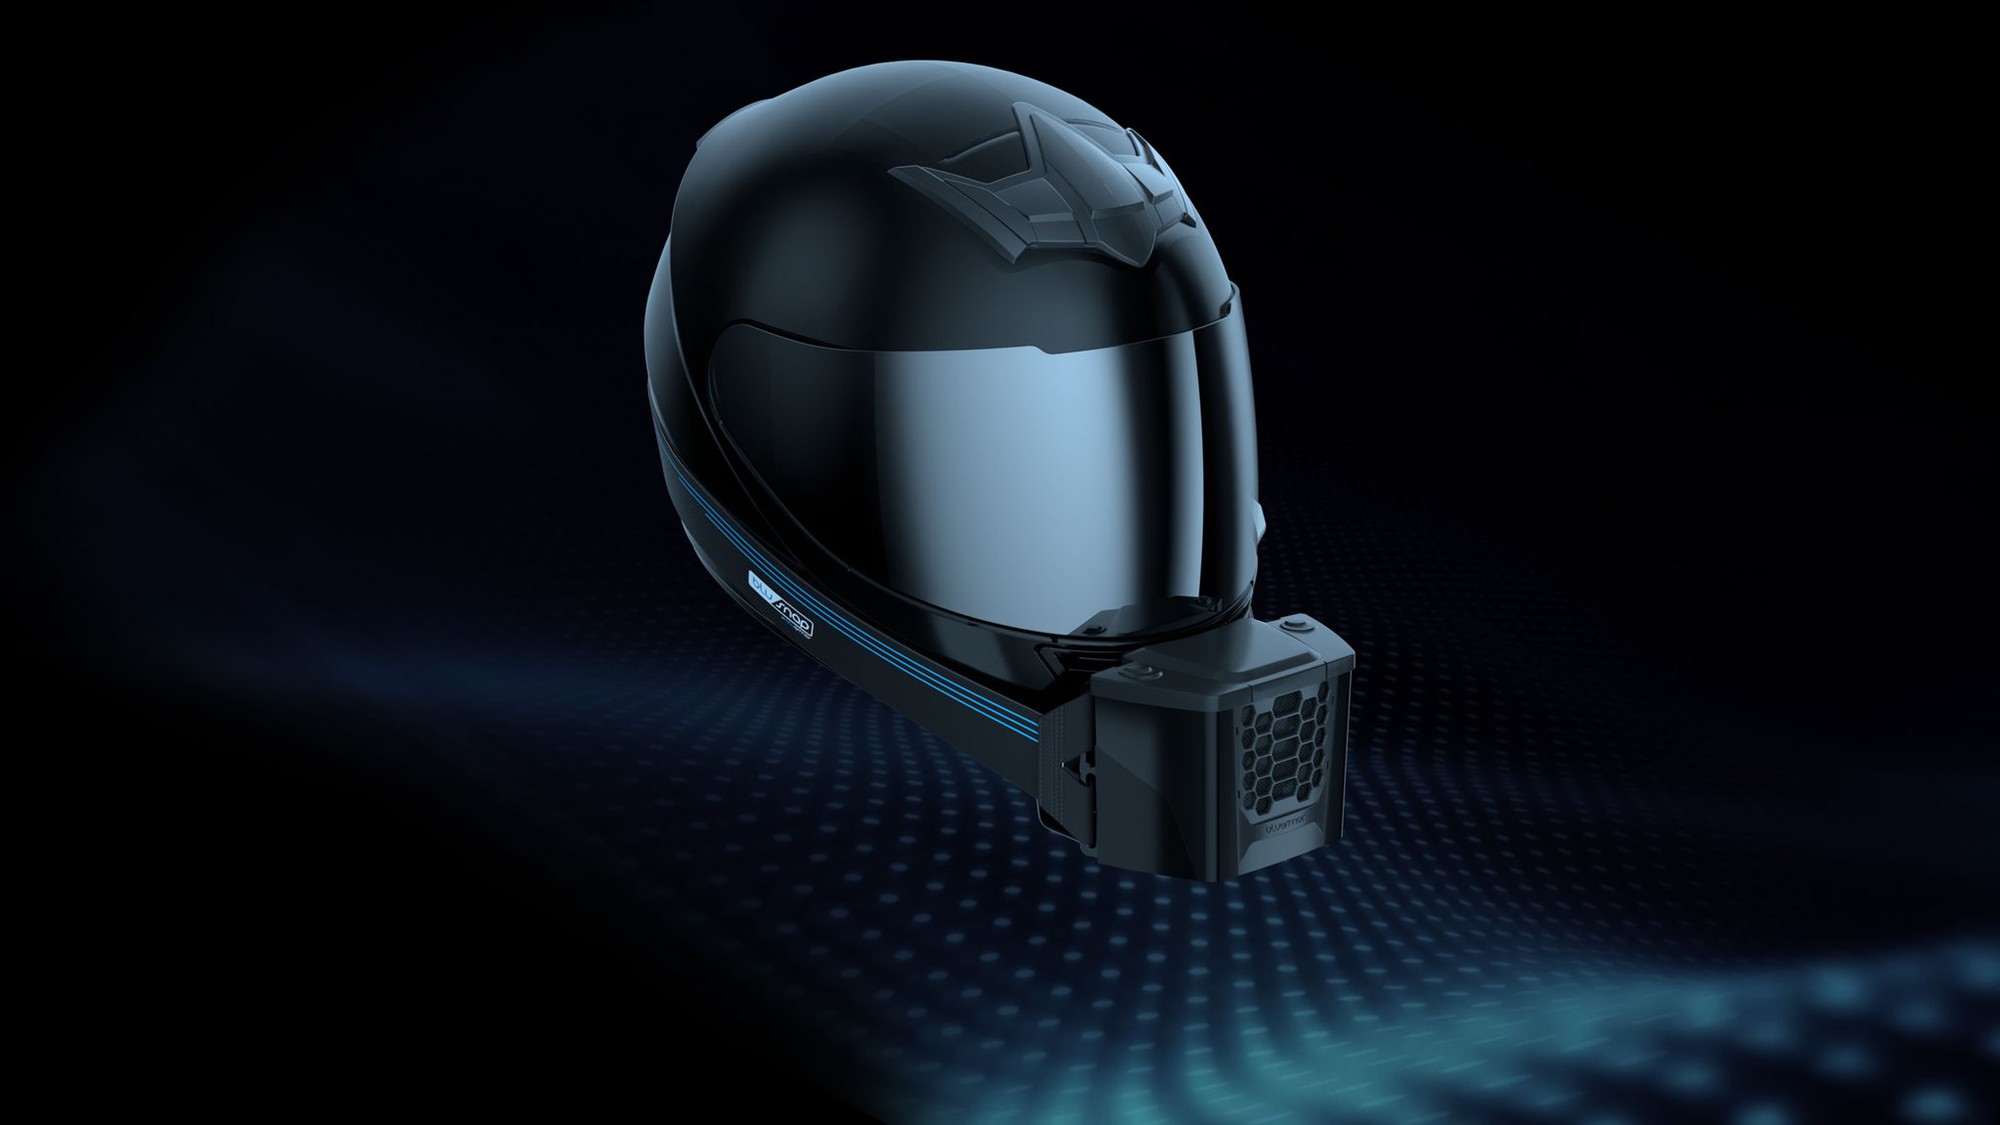 Gắn “điều hòa” cho mũ bảo hiểm, giá gần 400.000đ và đi kèm máy hệ thống lọc không khí - Ảnh 2.